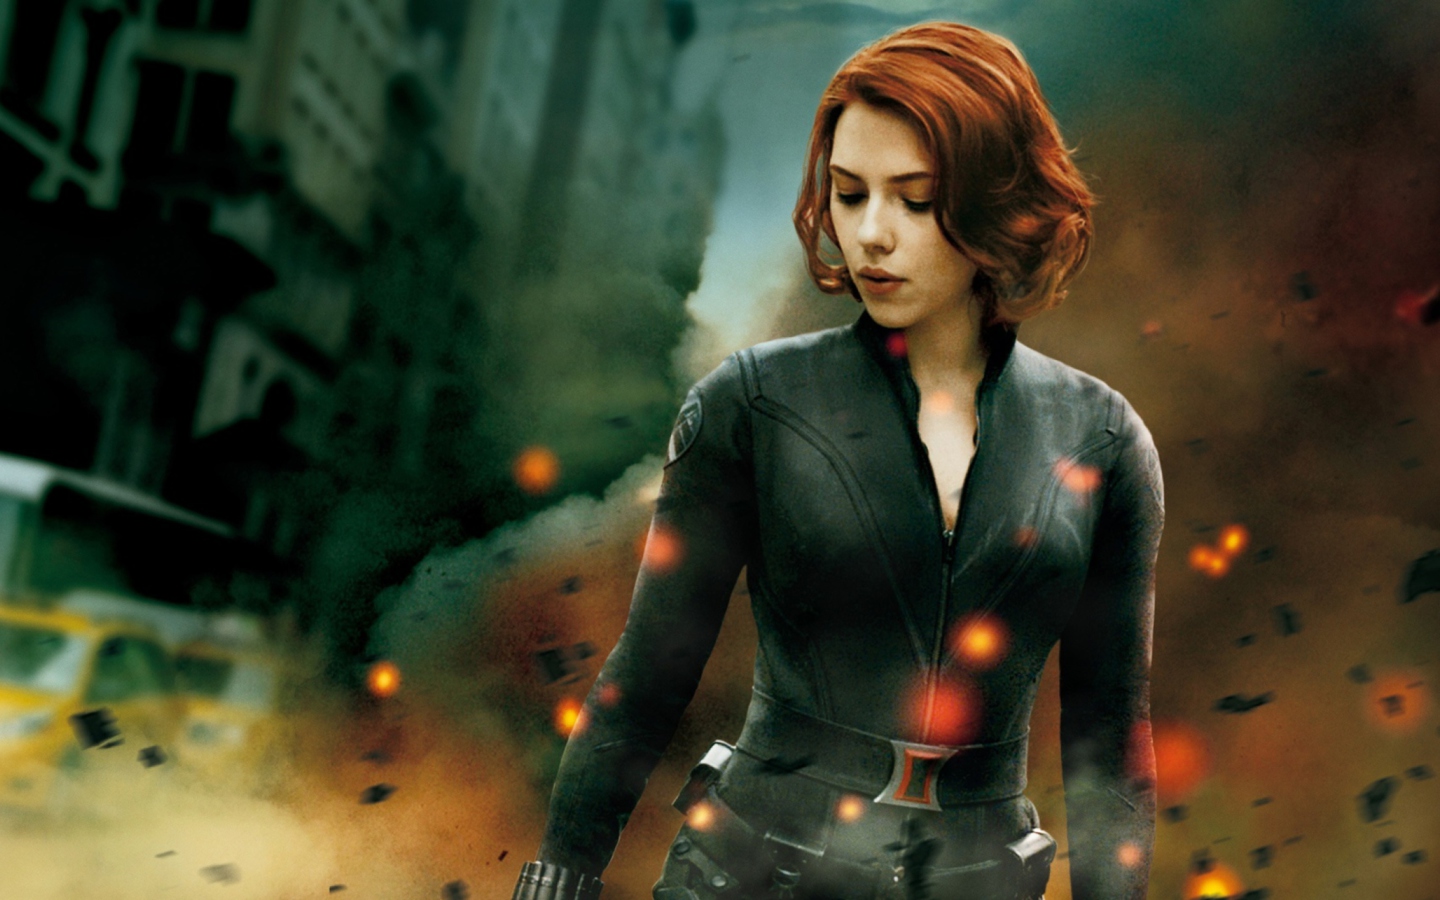 The Avengers - Black Widow wallpaper 1440x900